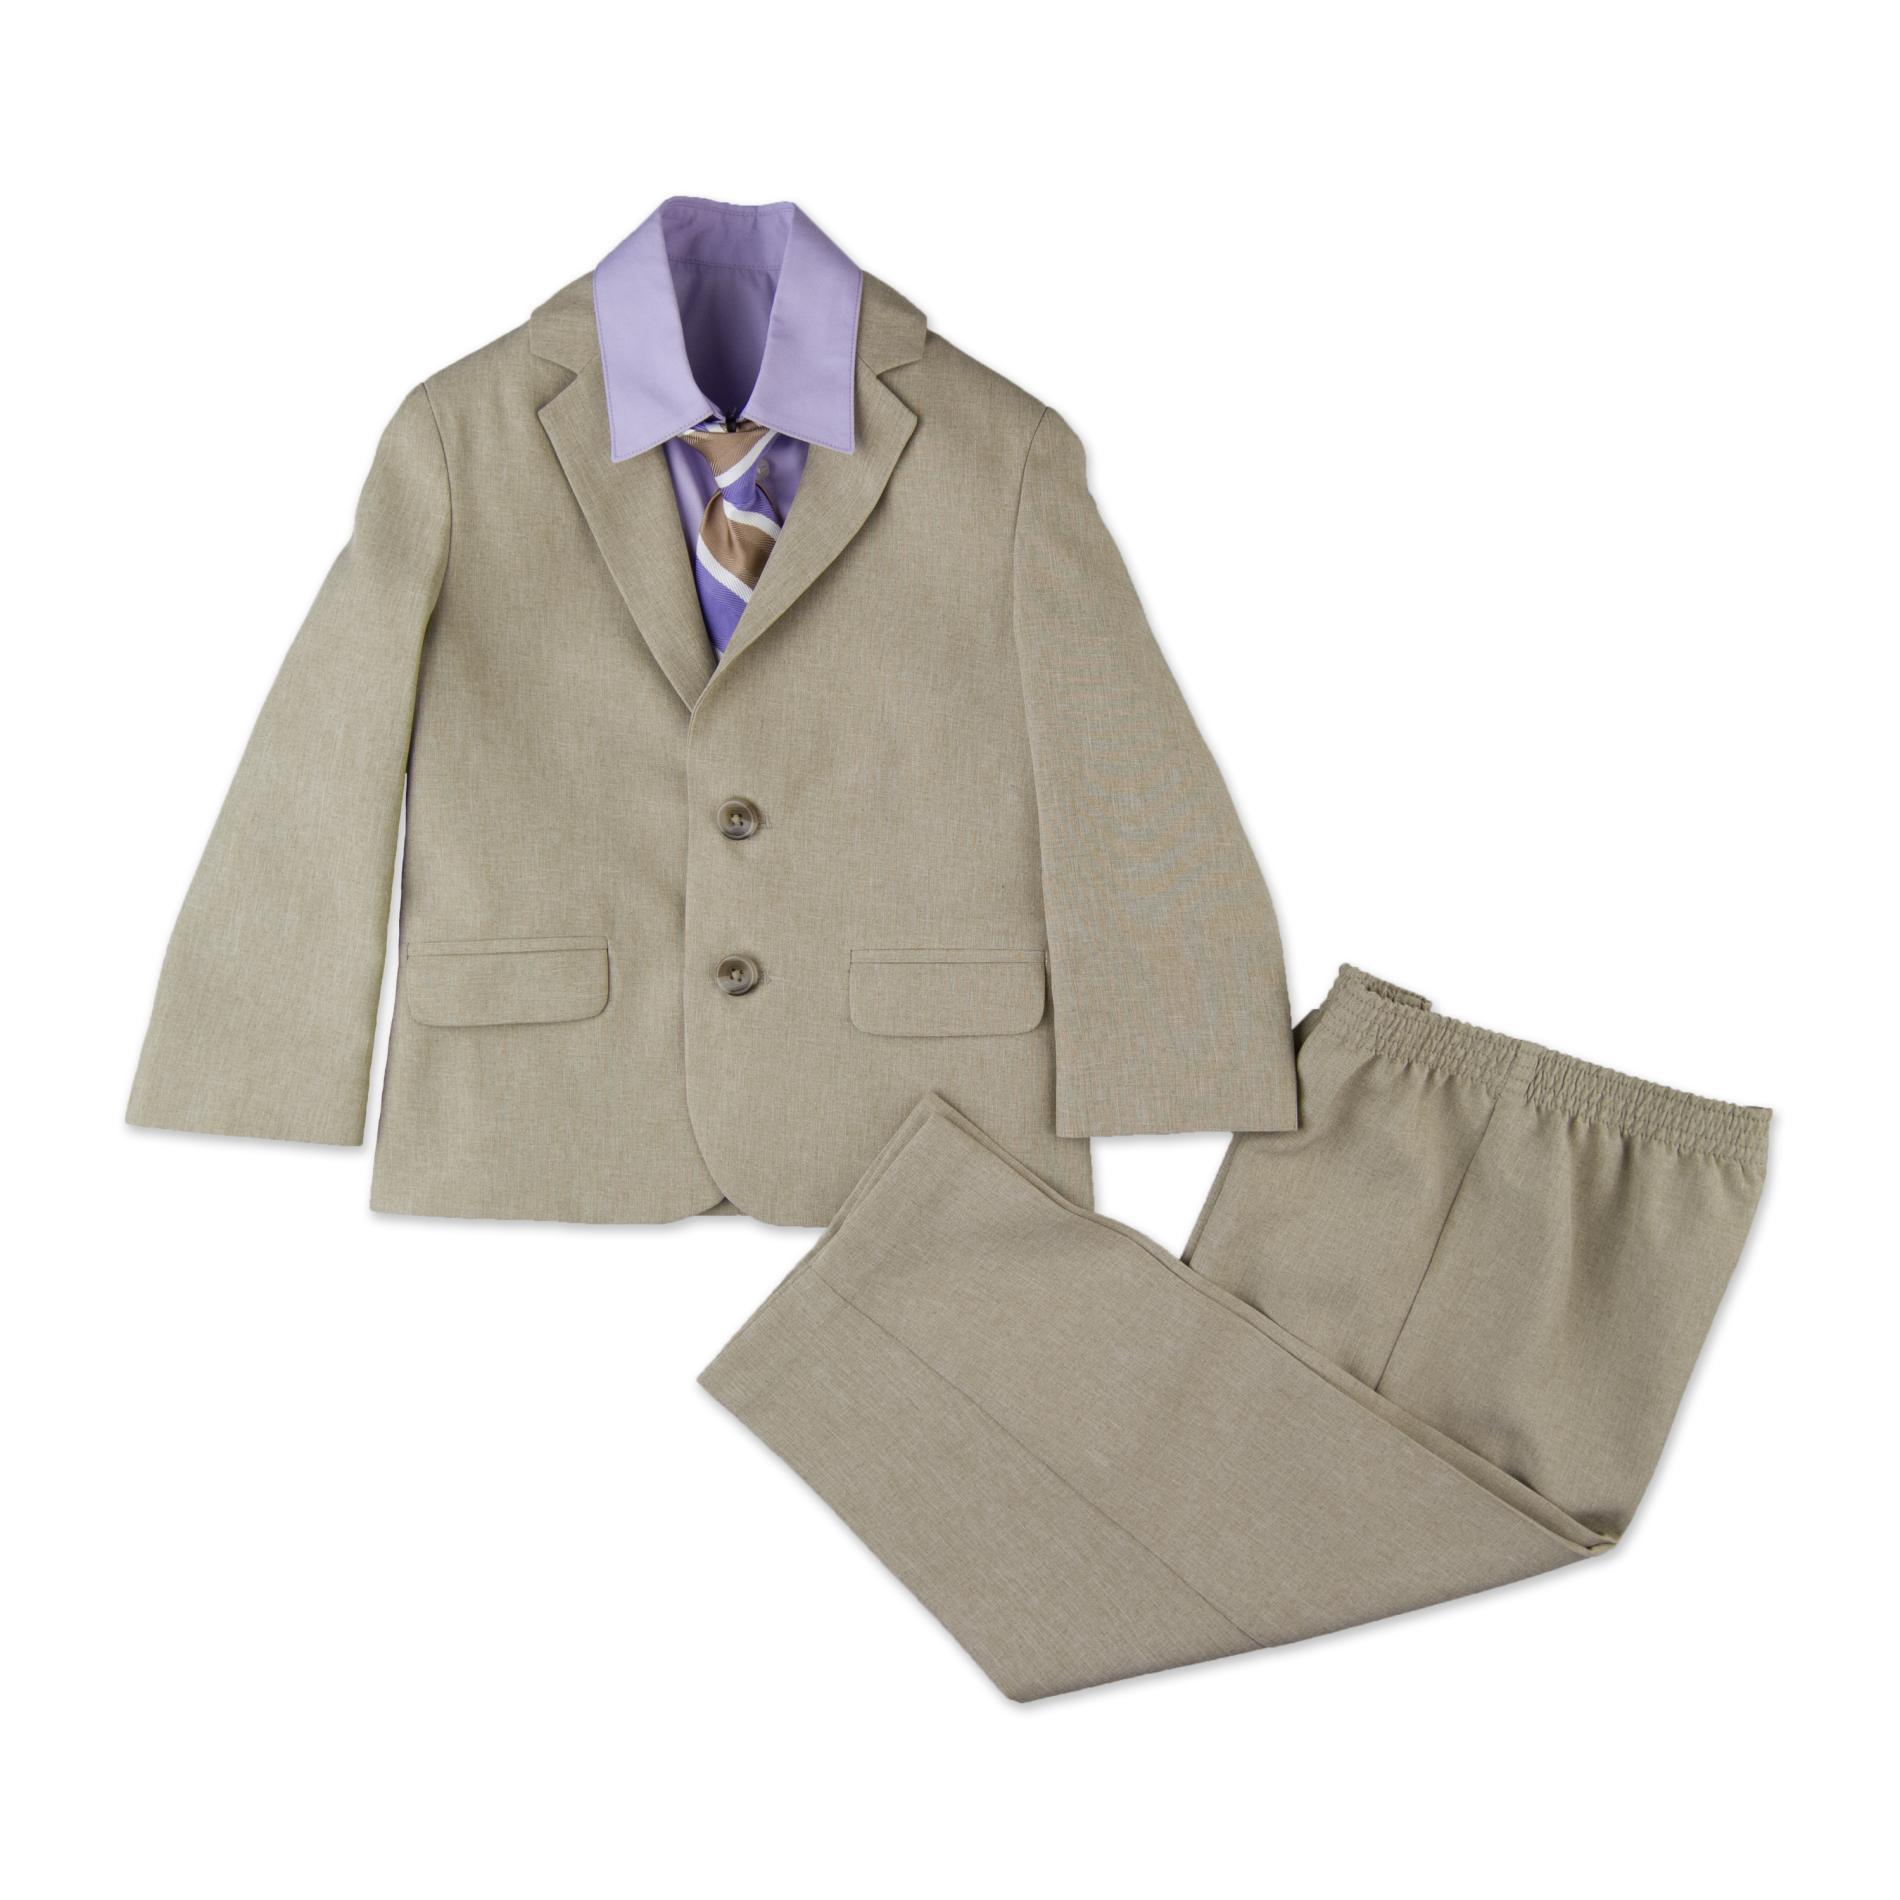 Dockers Infant & Toddler Boy's Suit Jacket  Dress Shirt  Pants & Tie